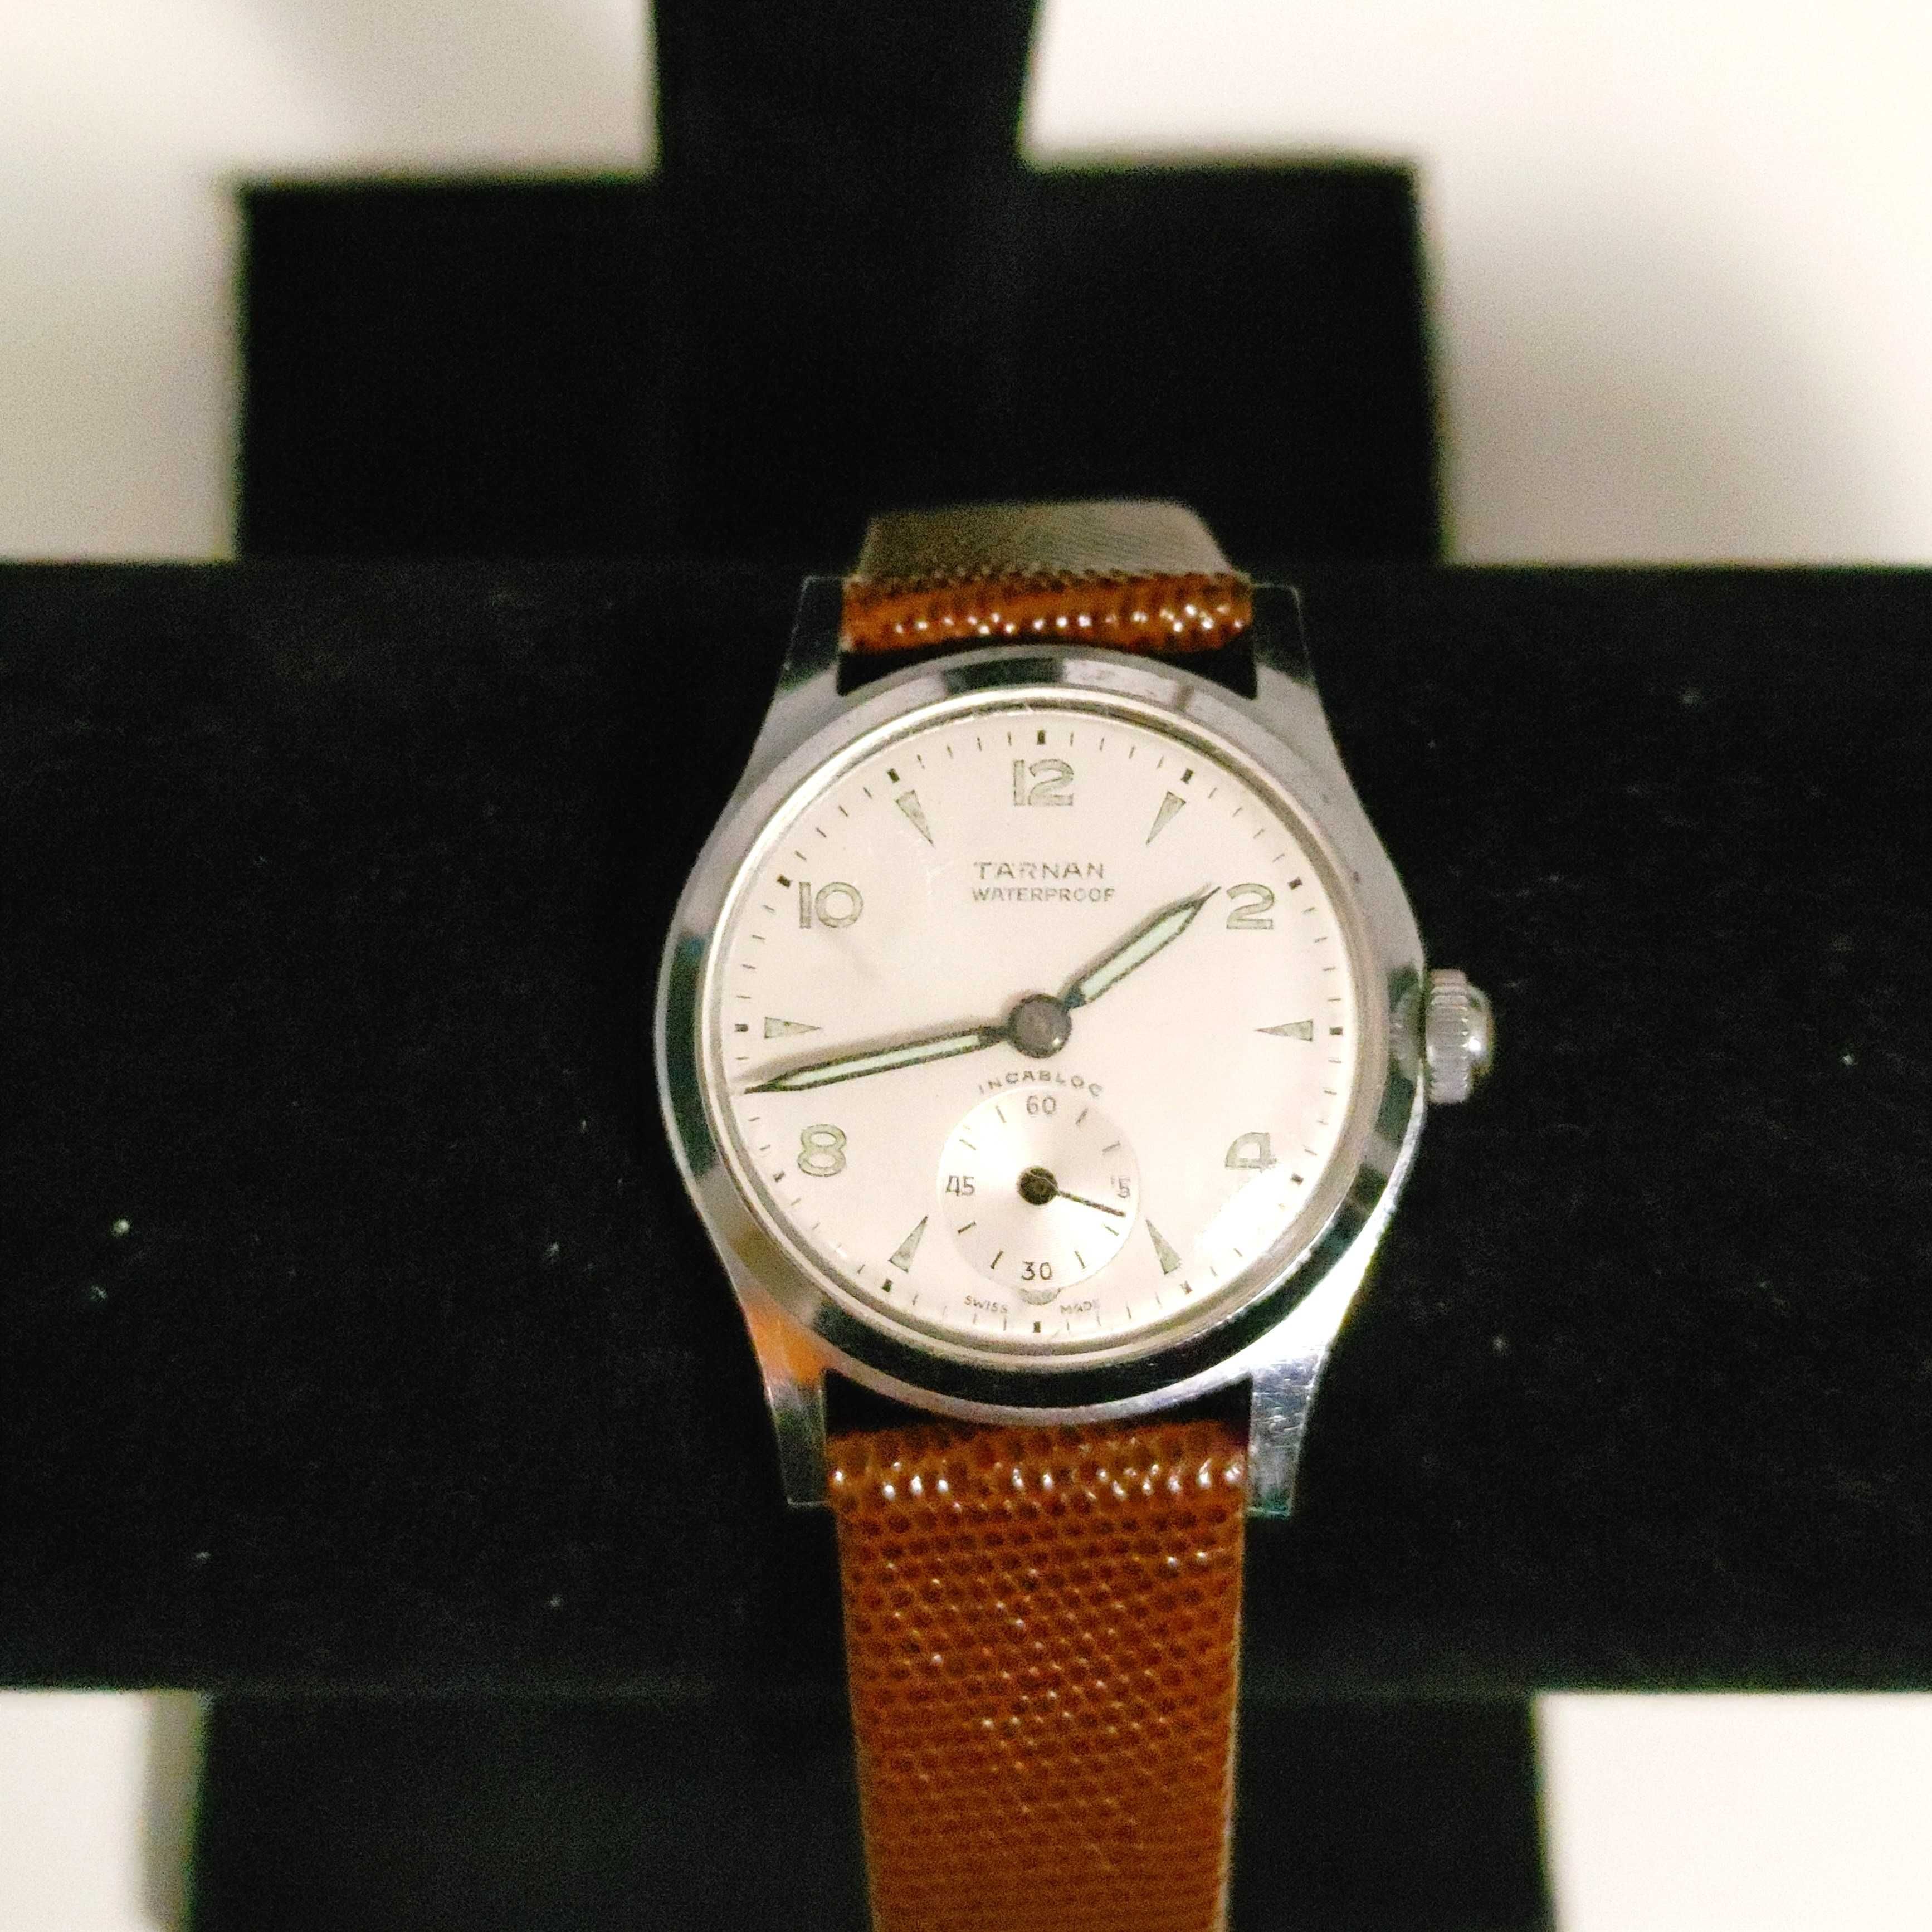 Męski zegarek naręczny z lat 50 tych marki Tarnan Szwajcarski